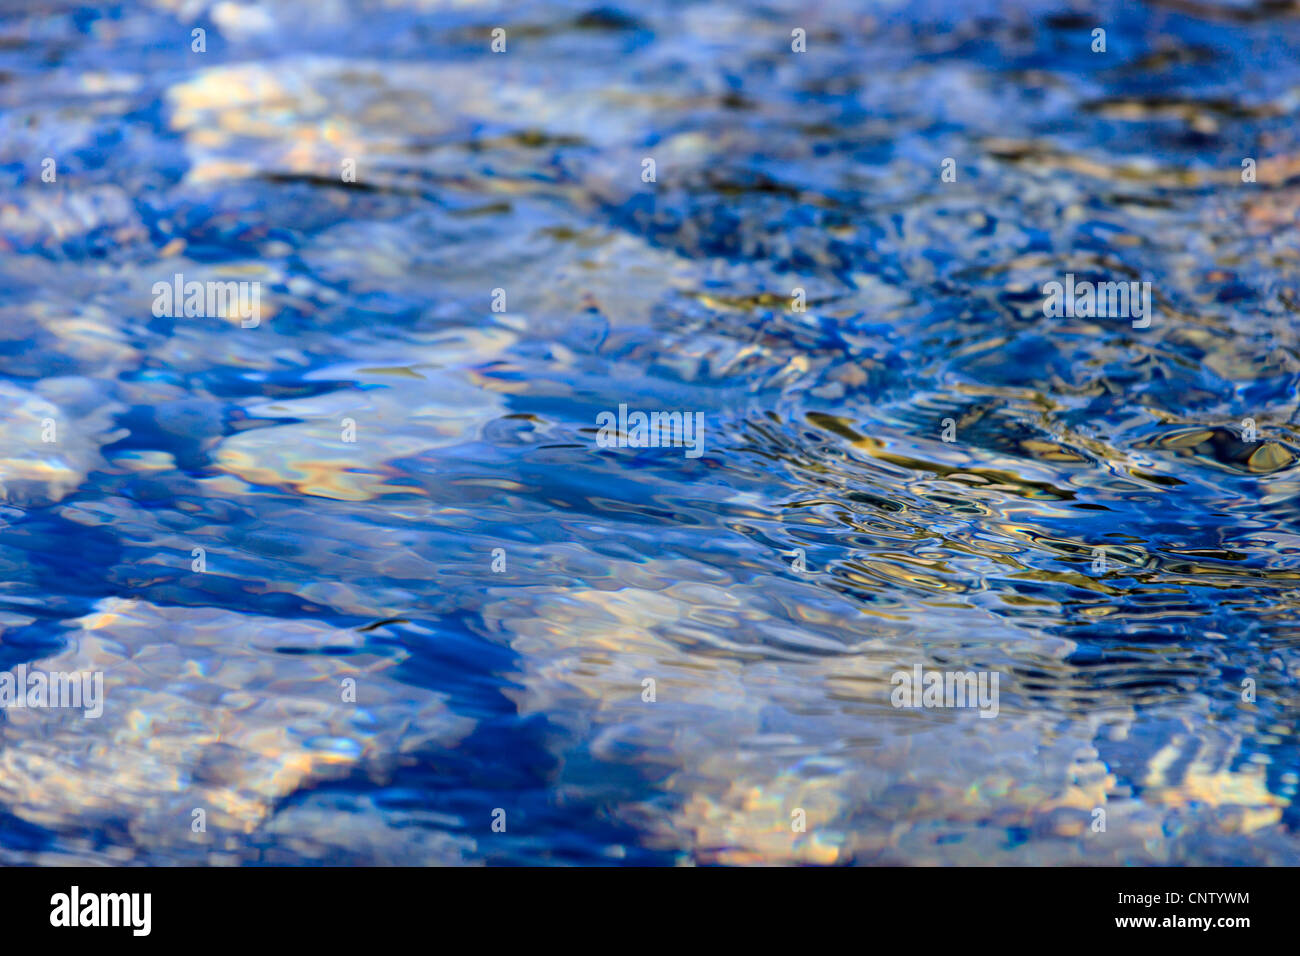 Ciottoli sotto l'acqua, le onde, riflessione Foto Stock